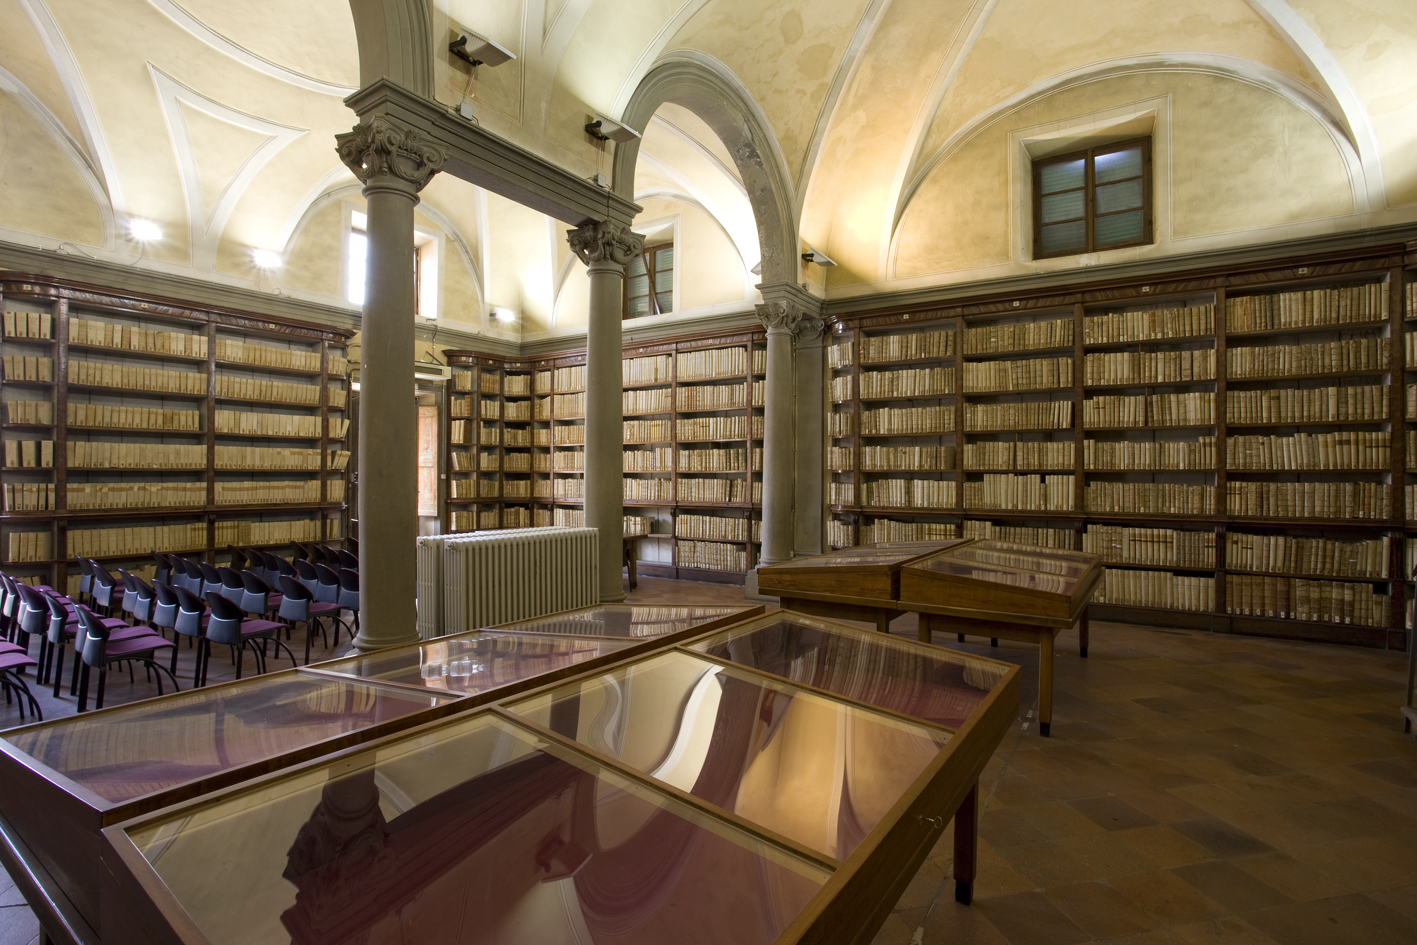 foto di repertorio della sala Gatteschi della biblioteca Forteguerriana - fonte Comune di Pistoia